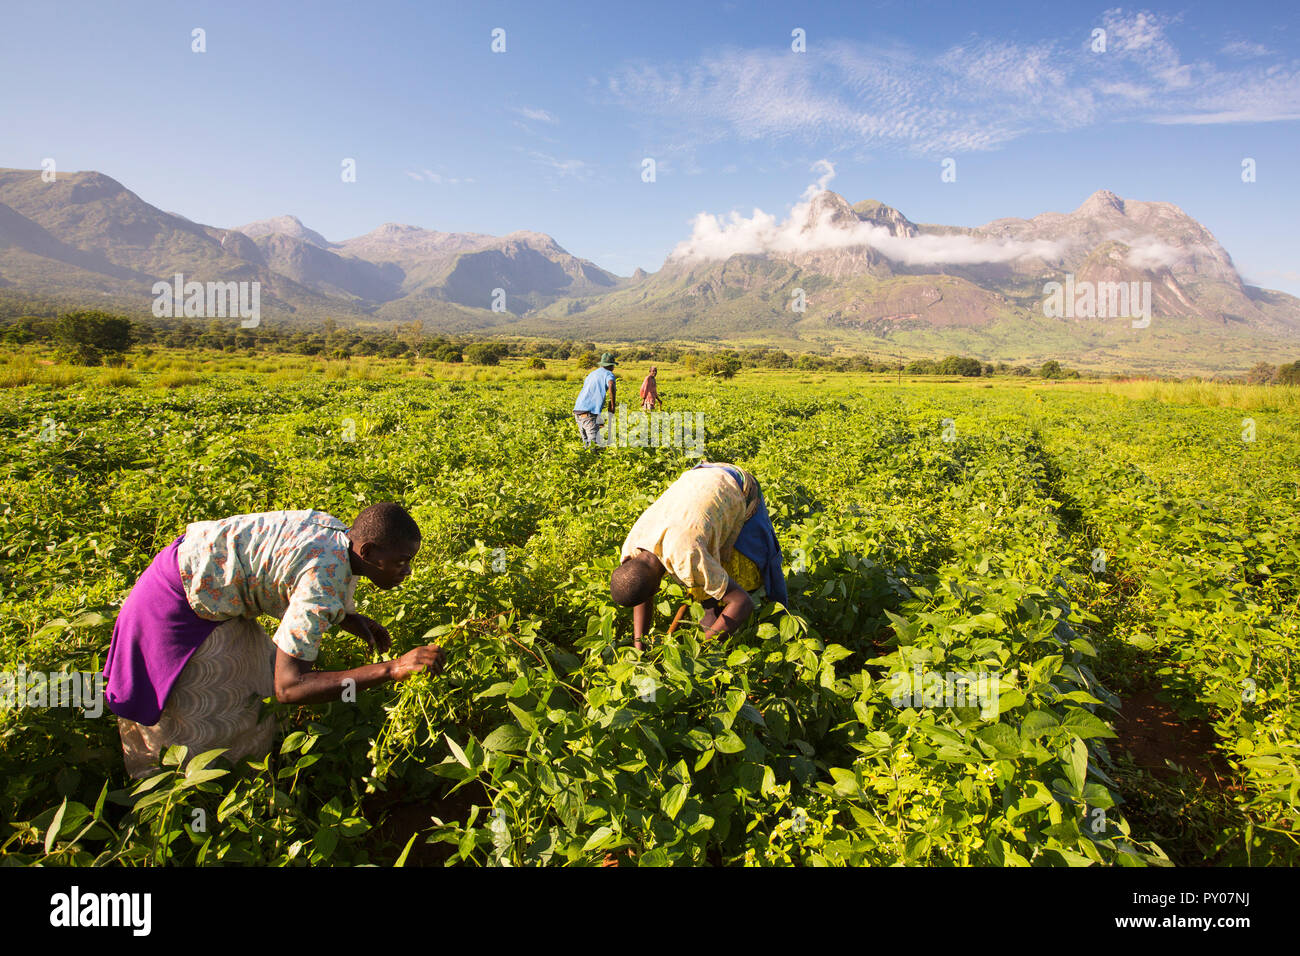 Malawische Arbeiter schuften in einer Ernte von Soay-schafe als unter Mount Mulanje. In dieser ärmsten der afrikanischen Länder, viele landwirtschaftliche Arbeiter verdienen weniger als ÂỲÂẀÂỲÂ £ 1 pro Tag. Stockfoto